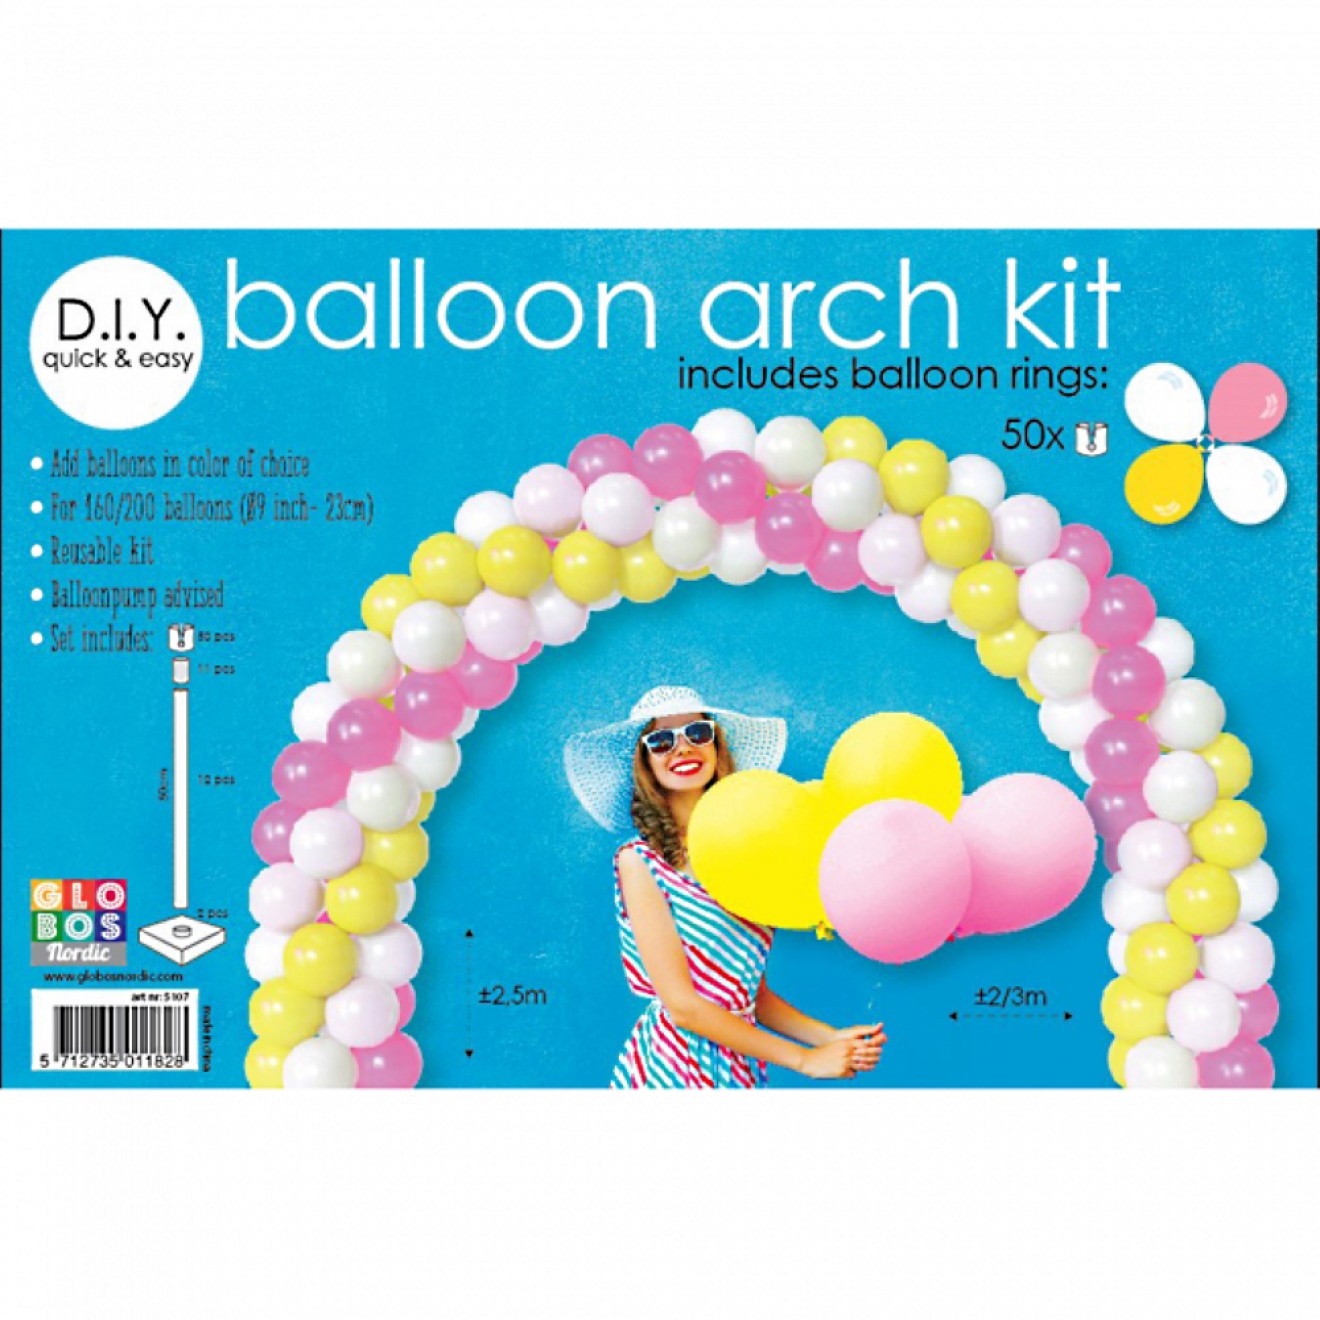 Ballonbogen / Luftballon Torbogen - Set zum Selberbauen